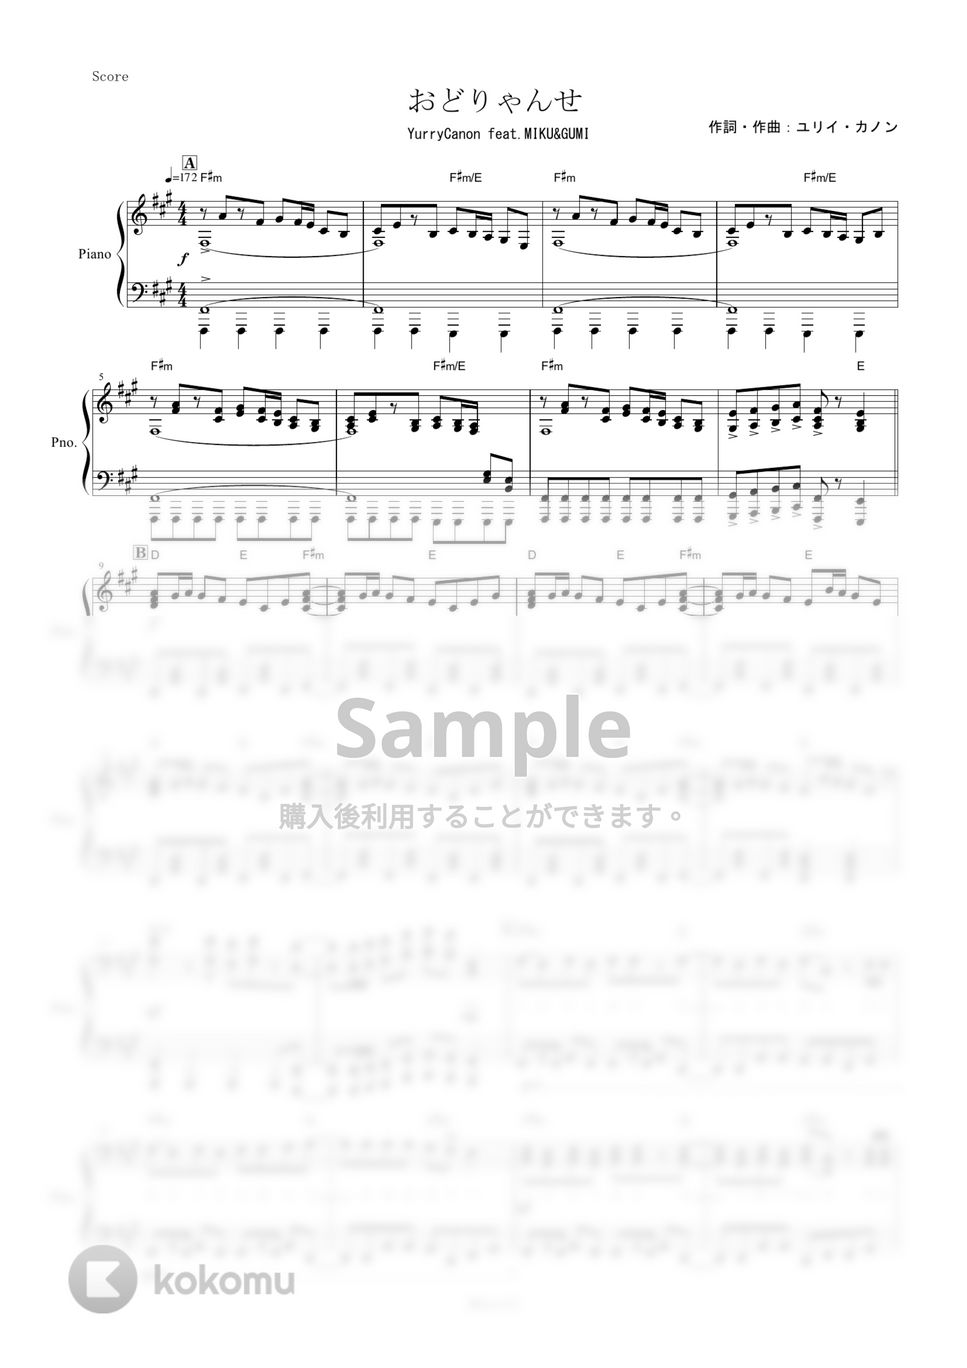 ユリイ・カノン - おどりゃんせ (ピアノ楽譜/全６ページ) by yoshi